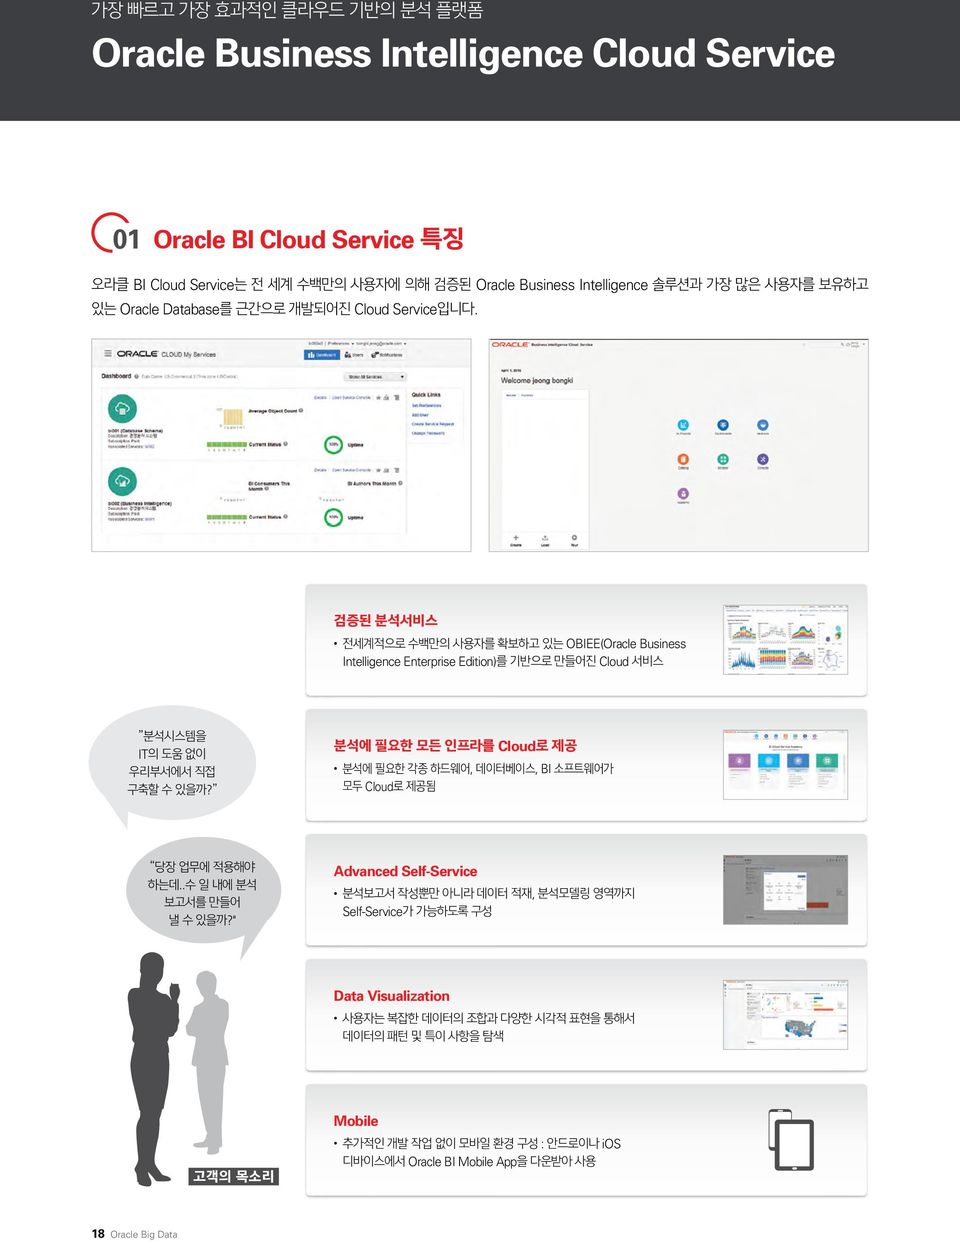 OBIEE(Oracle Business Intelligence Enterprise Edition) Cloud IT? Cloud,, BI Cloud.